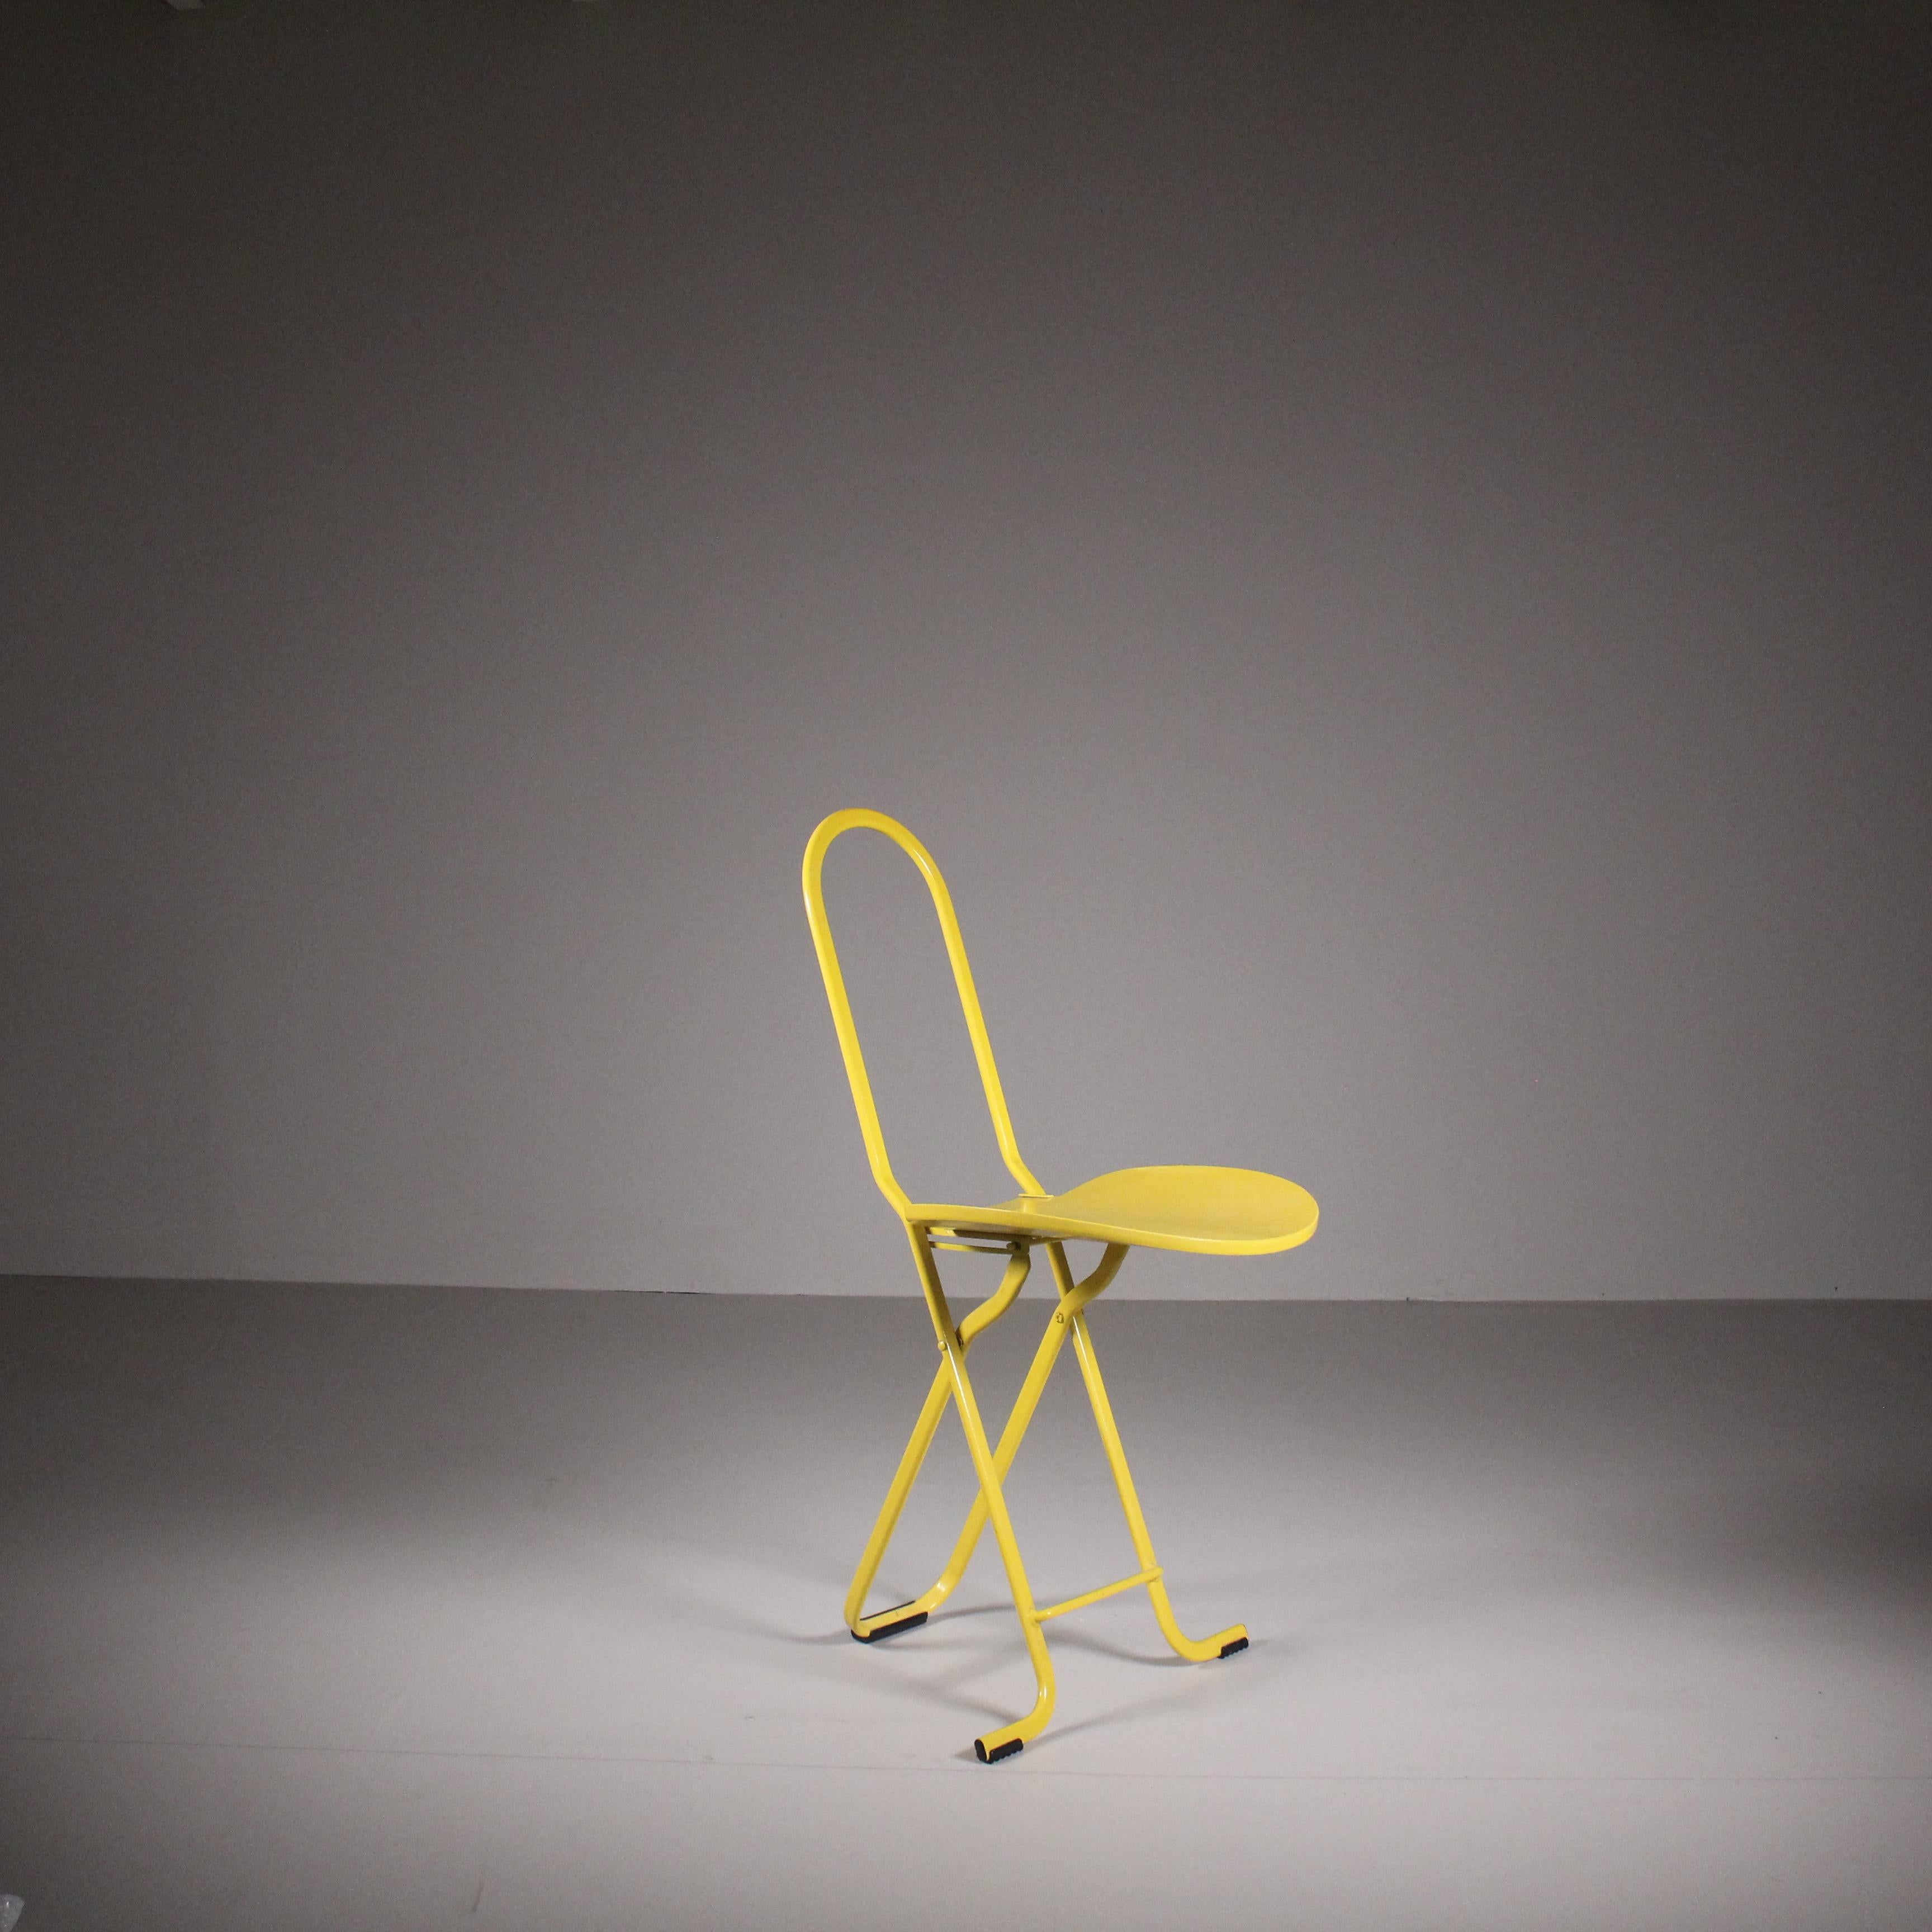 Chaise pliante Dafne, Gastone Rinaldi, Thema, 1970. La chaise pliante Dafne, conçue par Gastone Rinaldi en 1970 dans le cadre de la collection Thema, respire l'élégance intemporelle et la praticité. Avec sa teinte jaune vibrante, cette chaise ajoute